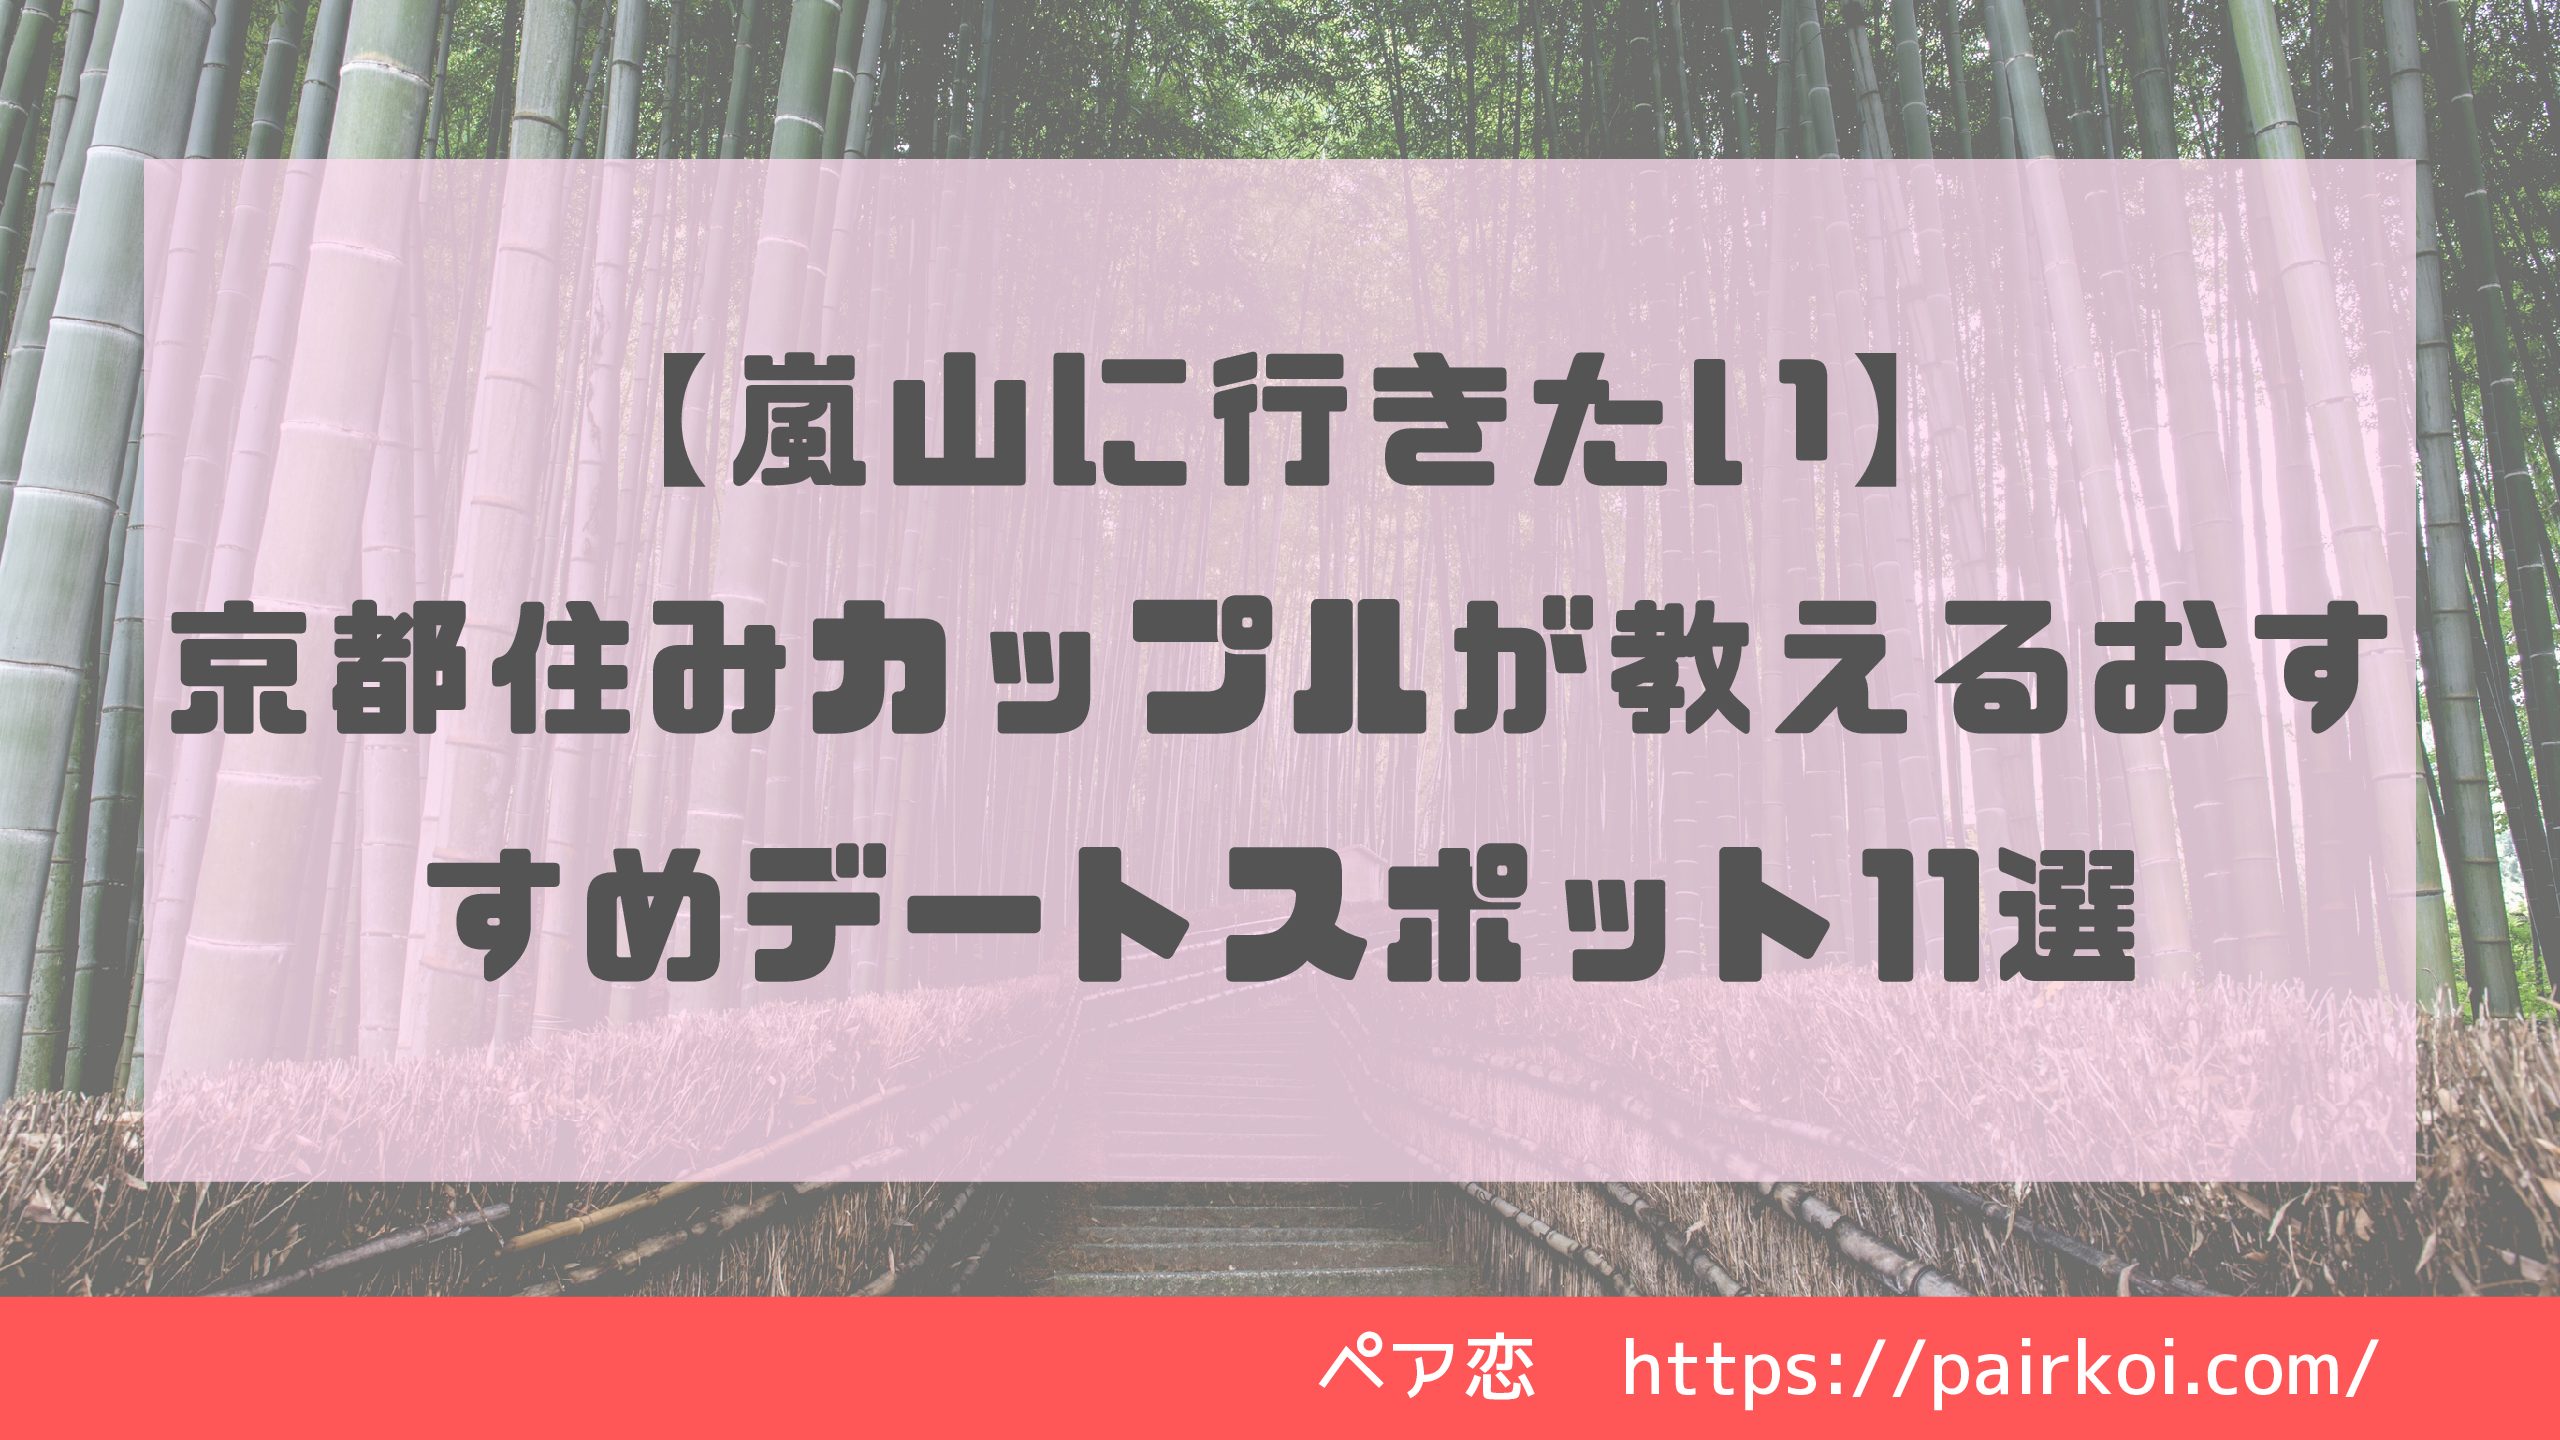 【嵐山に行きたい】京都住みカップルが教えるおすすめデートスポット11選